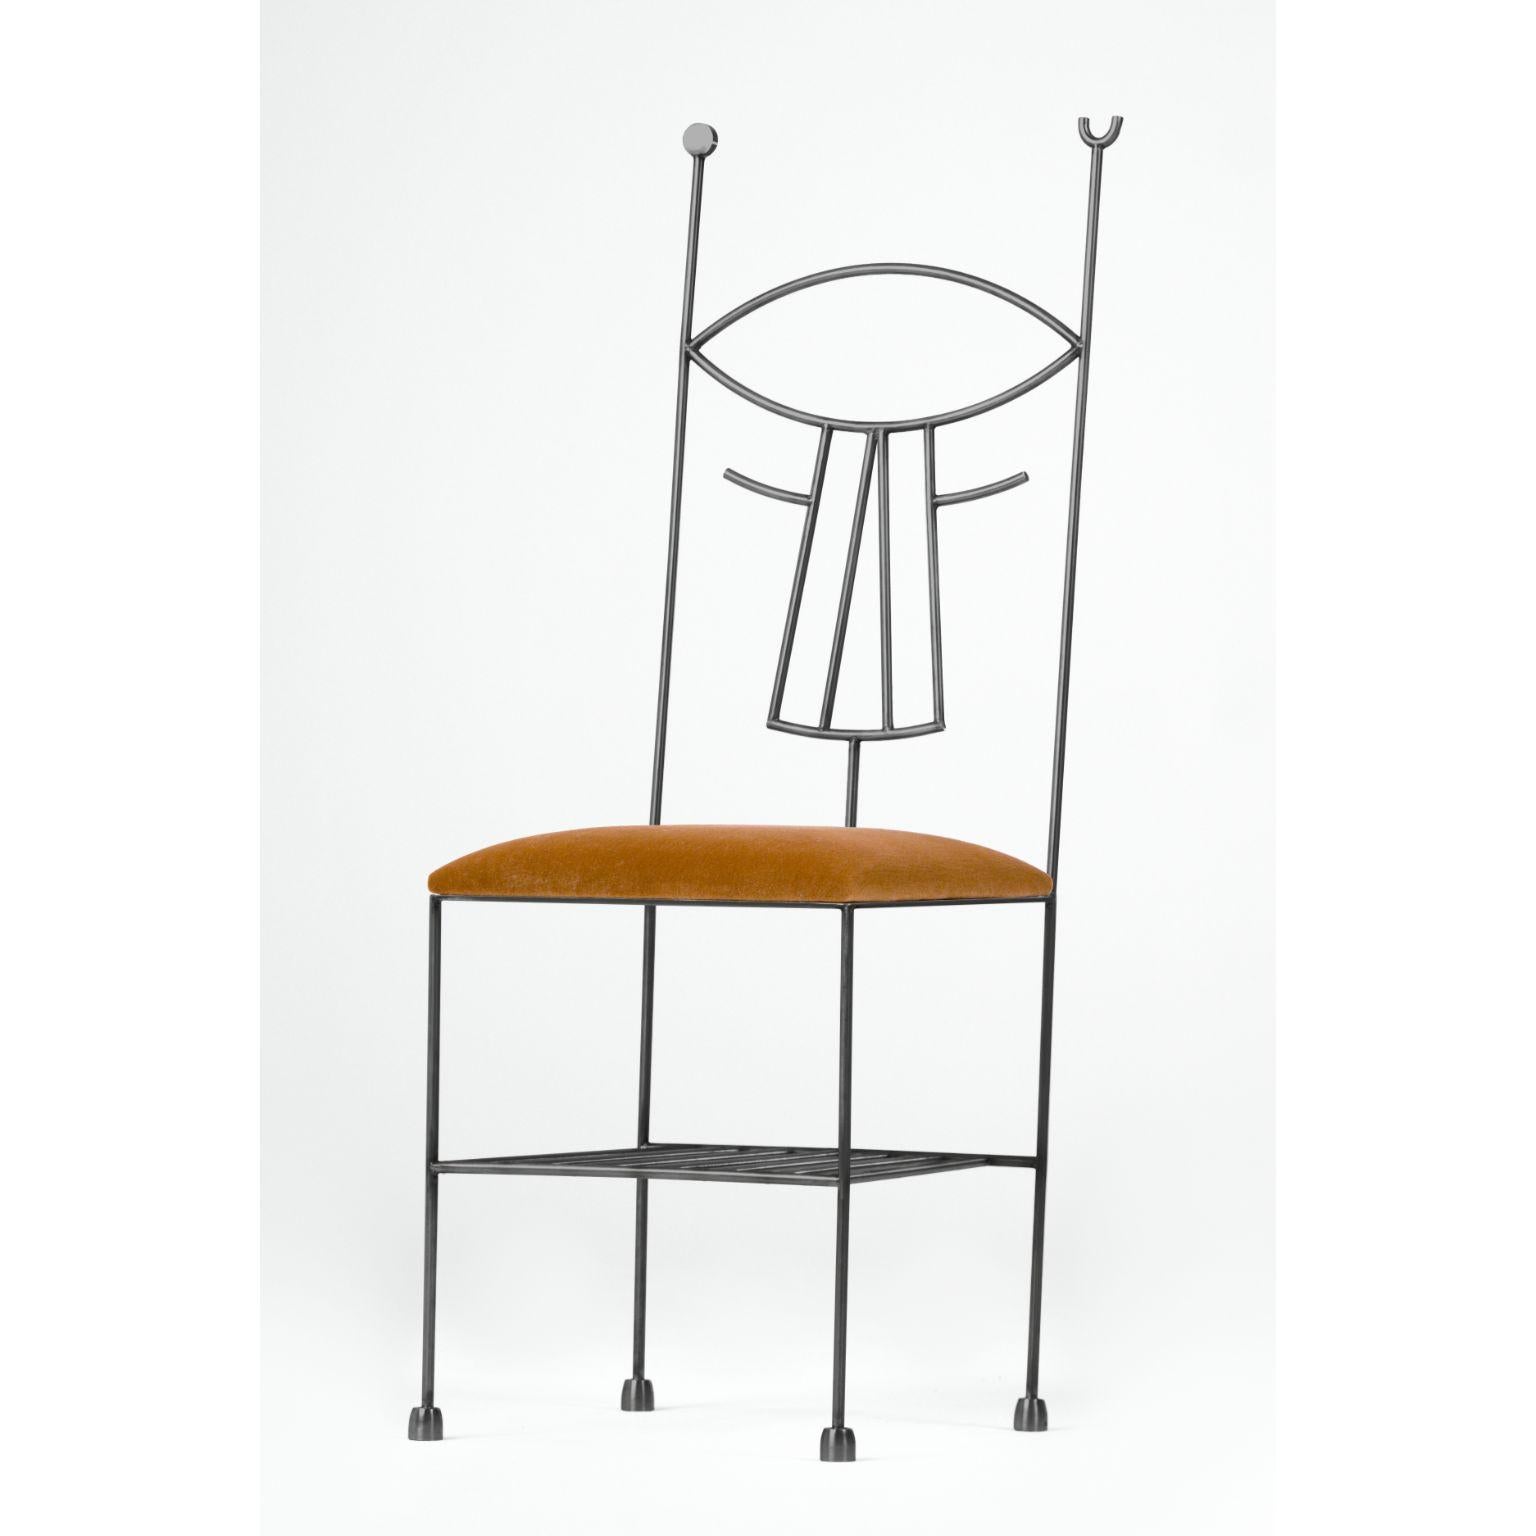 Musa-Stuhl mit Kissen von Qvinto Studio
Einzigartiges Stück. Handgefertigt.
Abmessungen: T 40 x B 40 x H 114 cm.
MATERIAL: rostfreier Stahl und Wolle.

Die Frau mit dem Fächer ist zwar kein surrealistisches Werk, aber repräsentativ für den zu Beginn